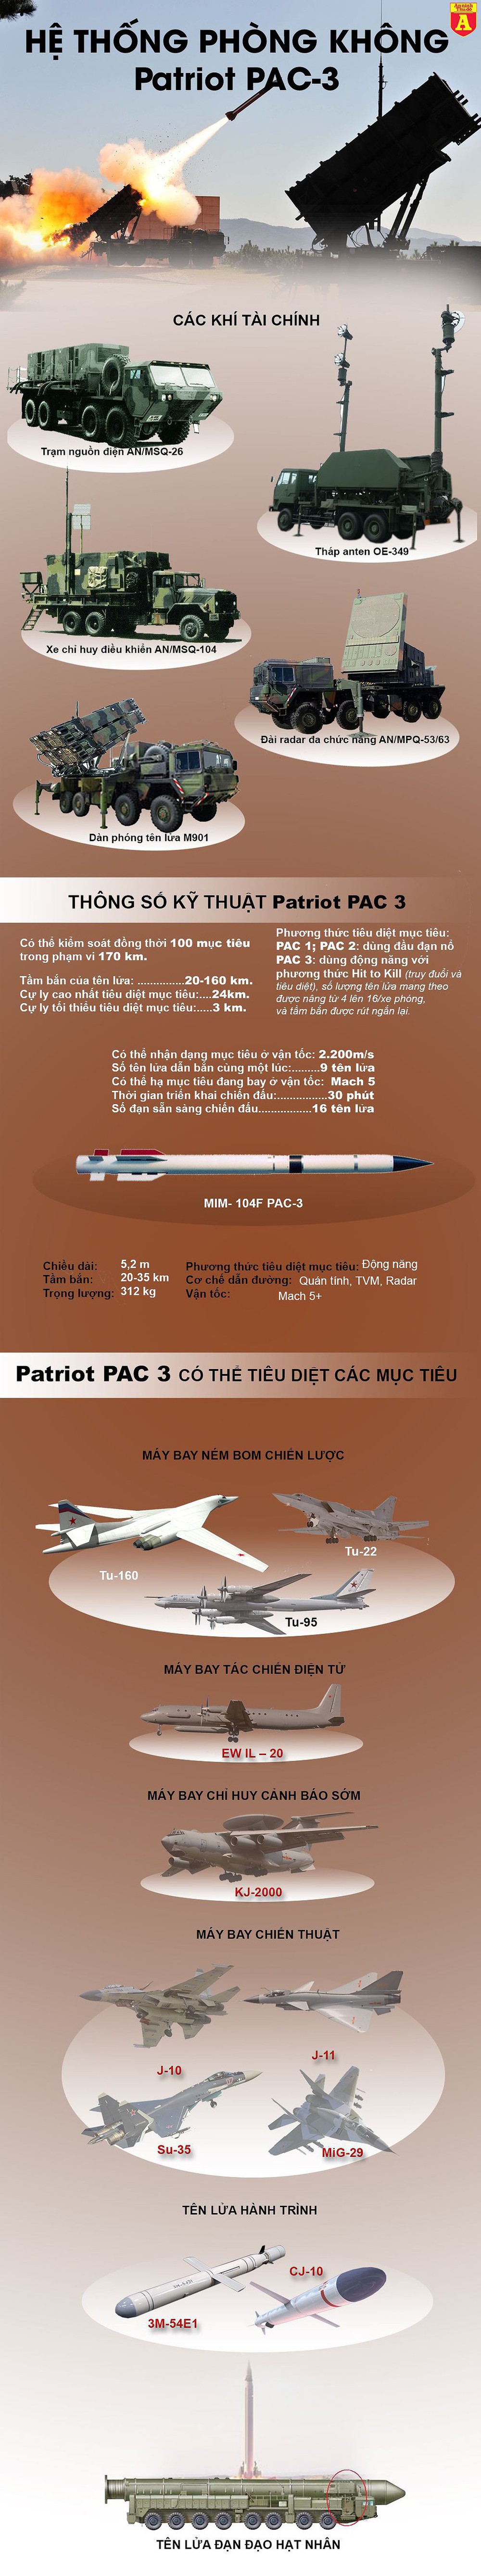 [Infographics] Giải mã lý do Đài Loan triển khai tên lửa phòng không Mỹ ngay trong khu dân cư  - Ảnh 1